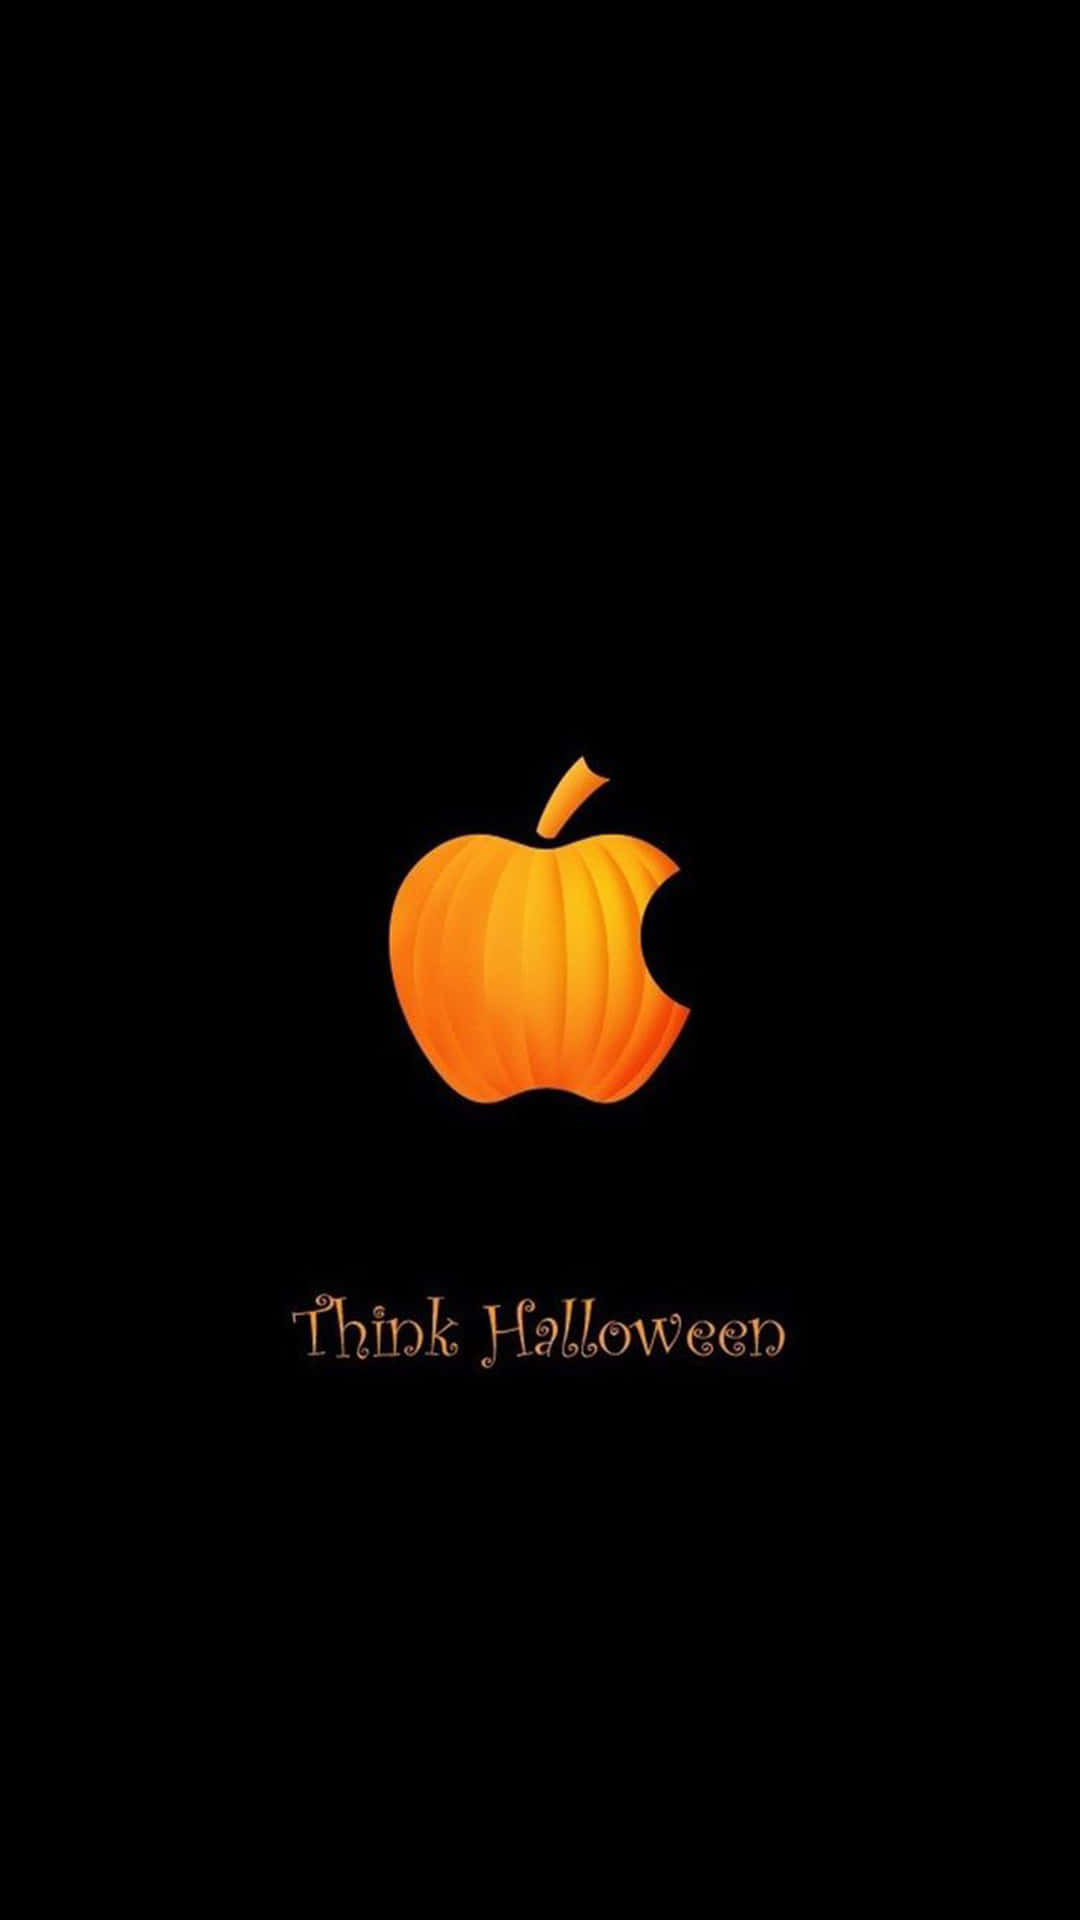 Sfondodi Halloween Per Iphone Con Il Logo Della Mela A Forma Di Zucca.